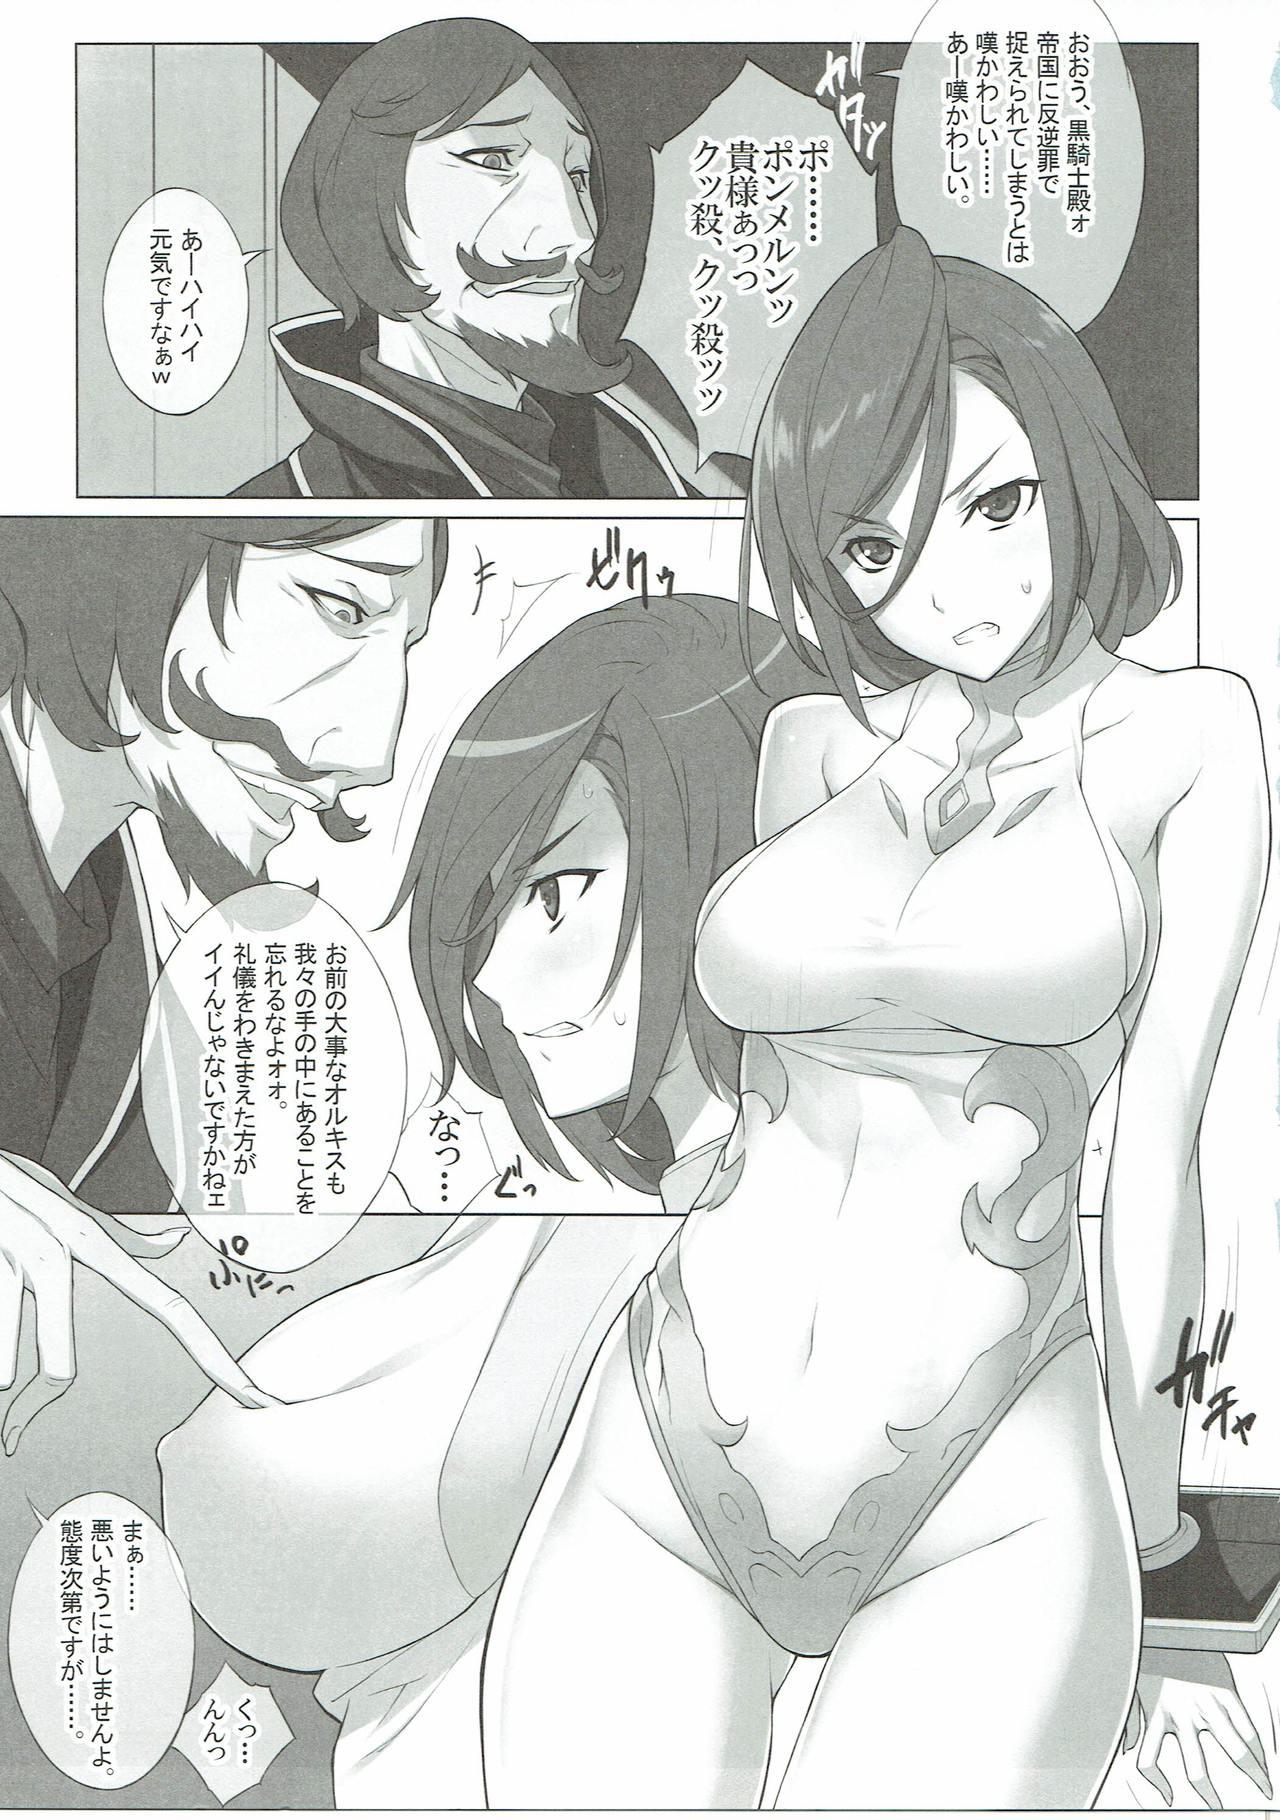 Machine Kakinhei no Kyoukaisen wa Doko da? - Granblue fantasy Busty - Page 11